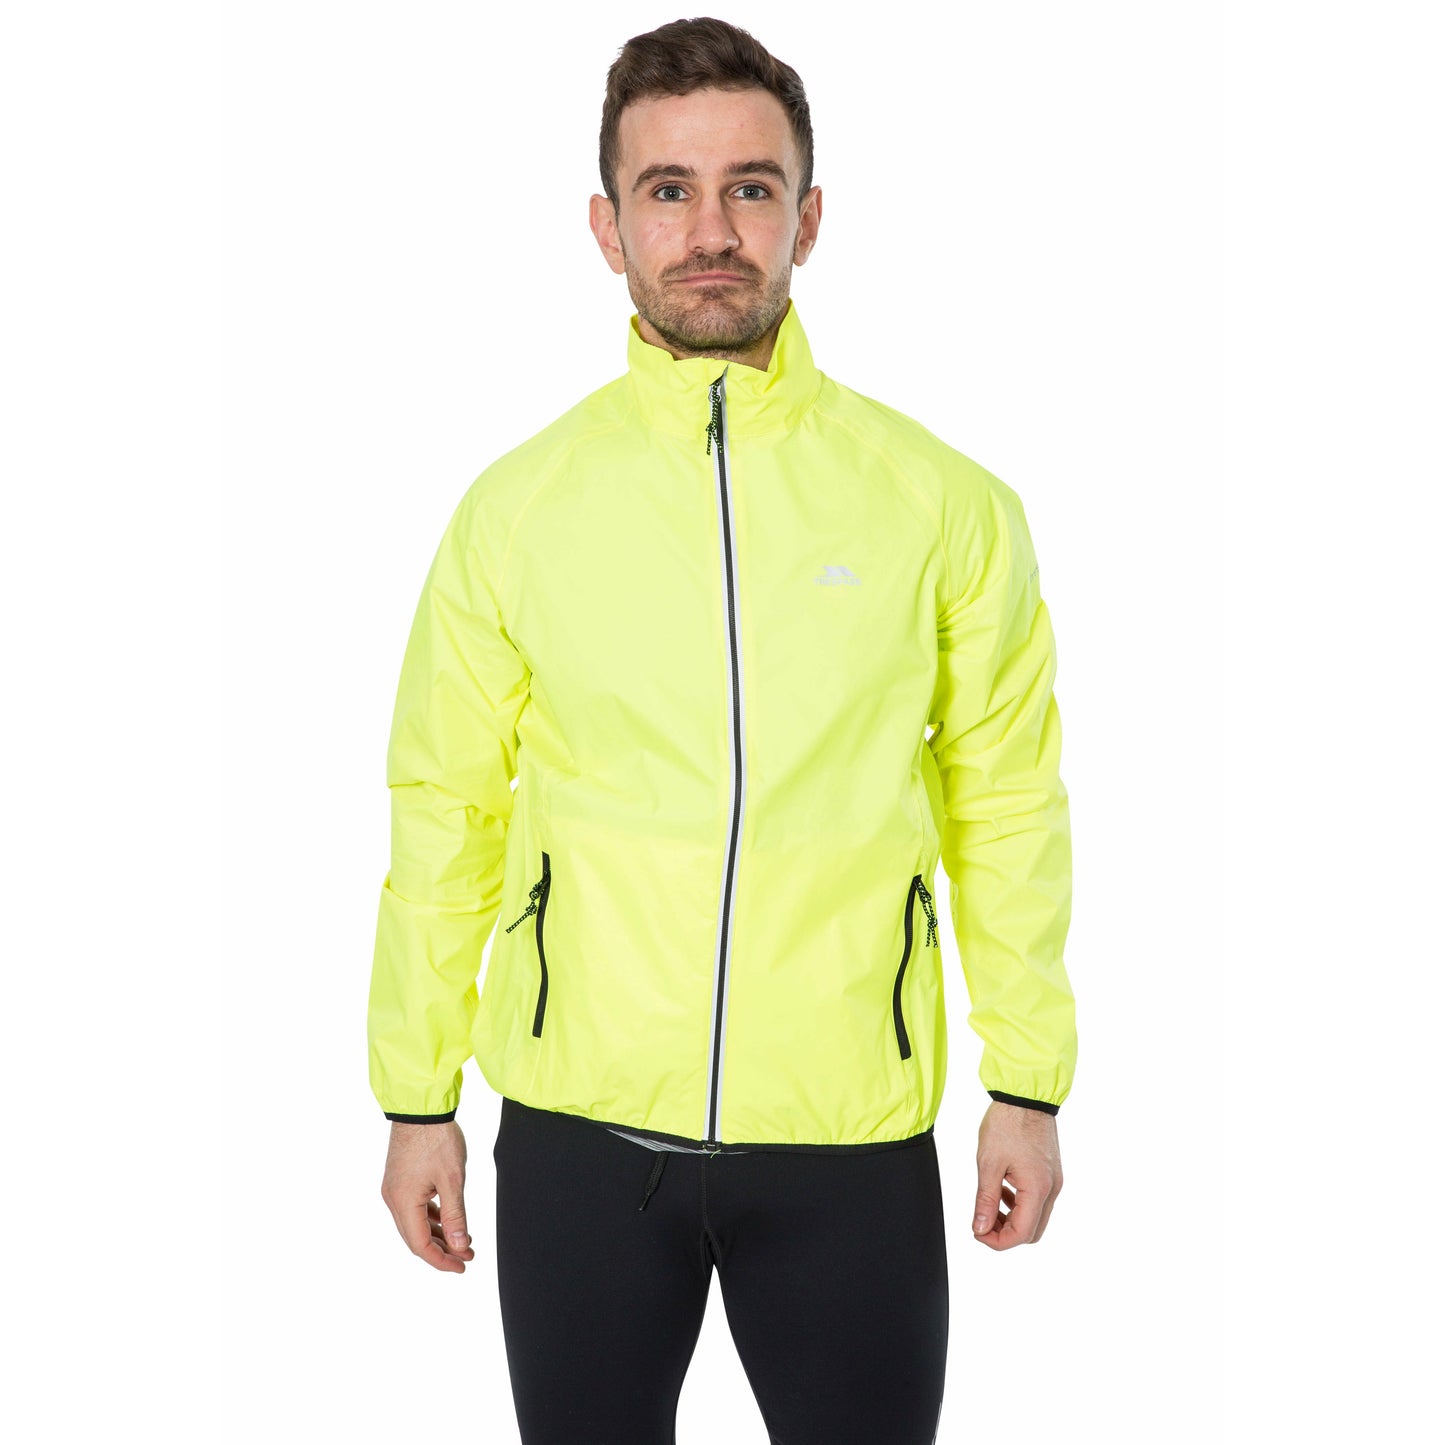 Retract Men's Hi-Vis Unpadded Waterproof Packaway Jacket in Yellow